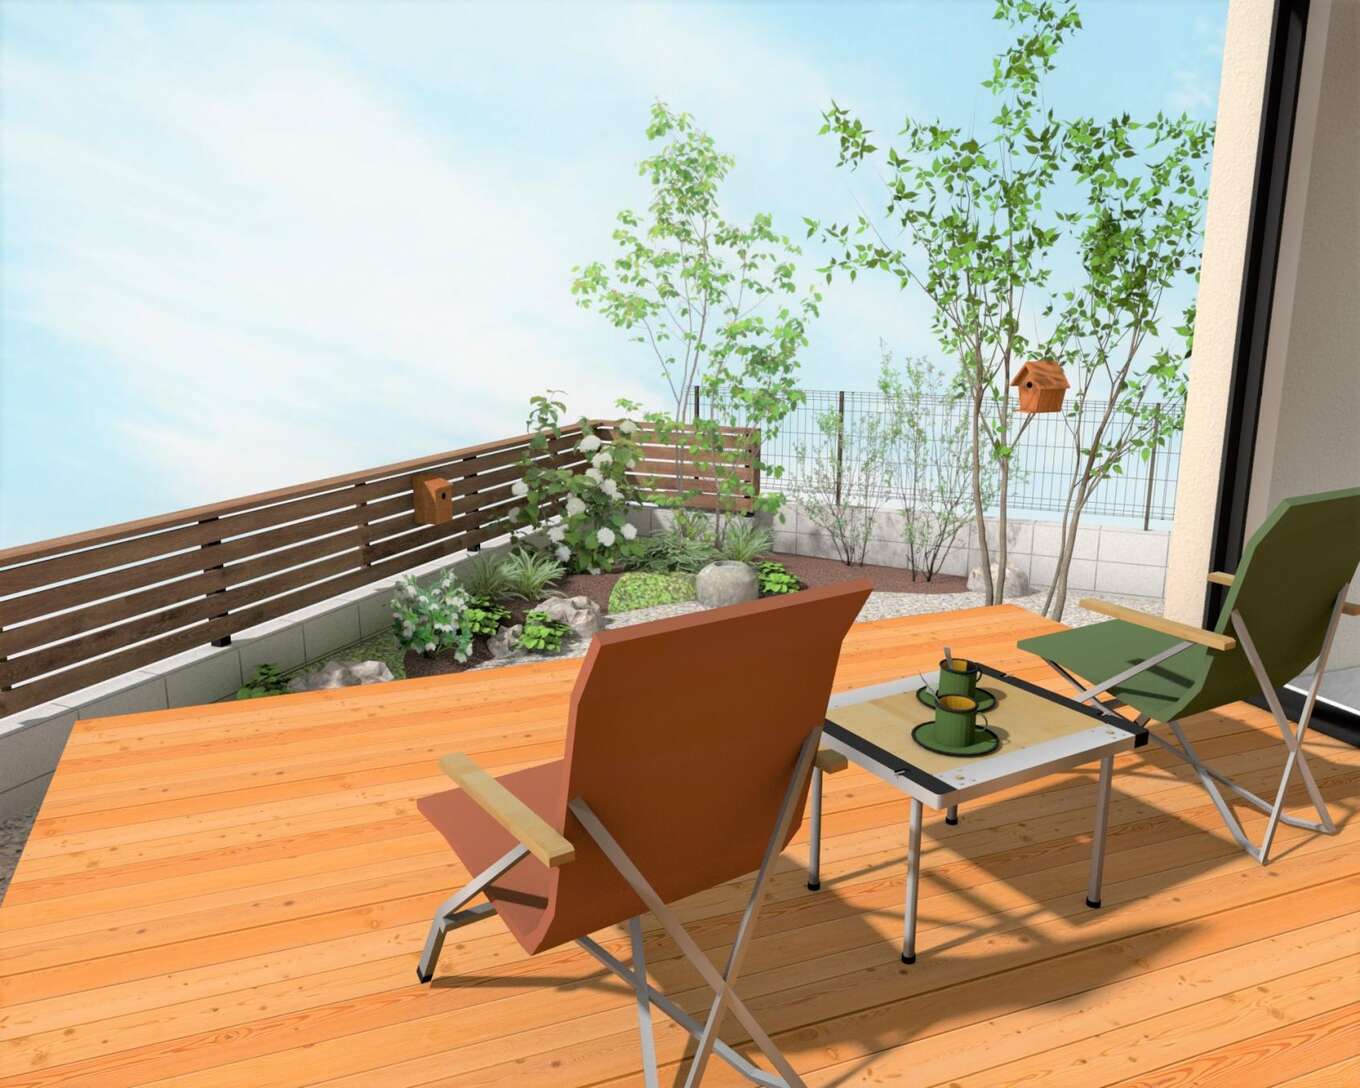 ウッドデッキと庭、椅子とサイドテーブル